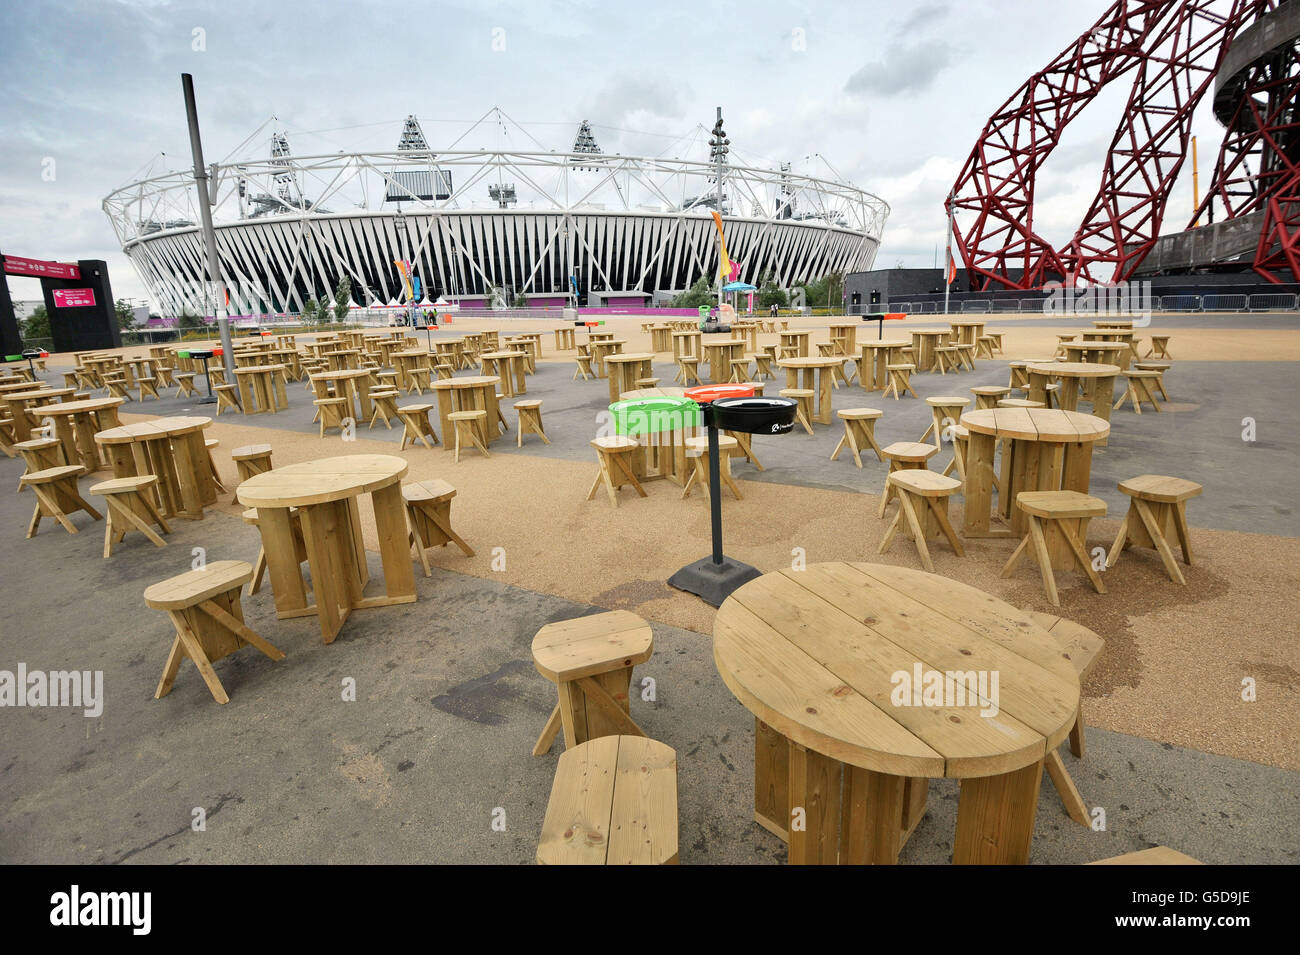 Jeux Olympiques de Londres - Jeux Olympiques post-parc.Un parc olympique vide après la fin des Jeux Olympiques de Londres 2012. Banque D'Images